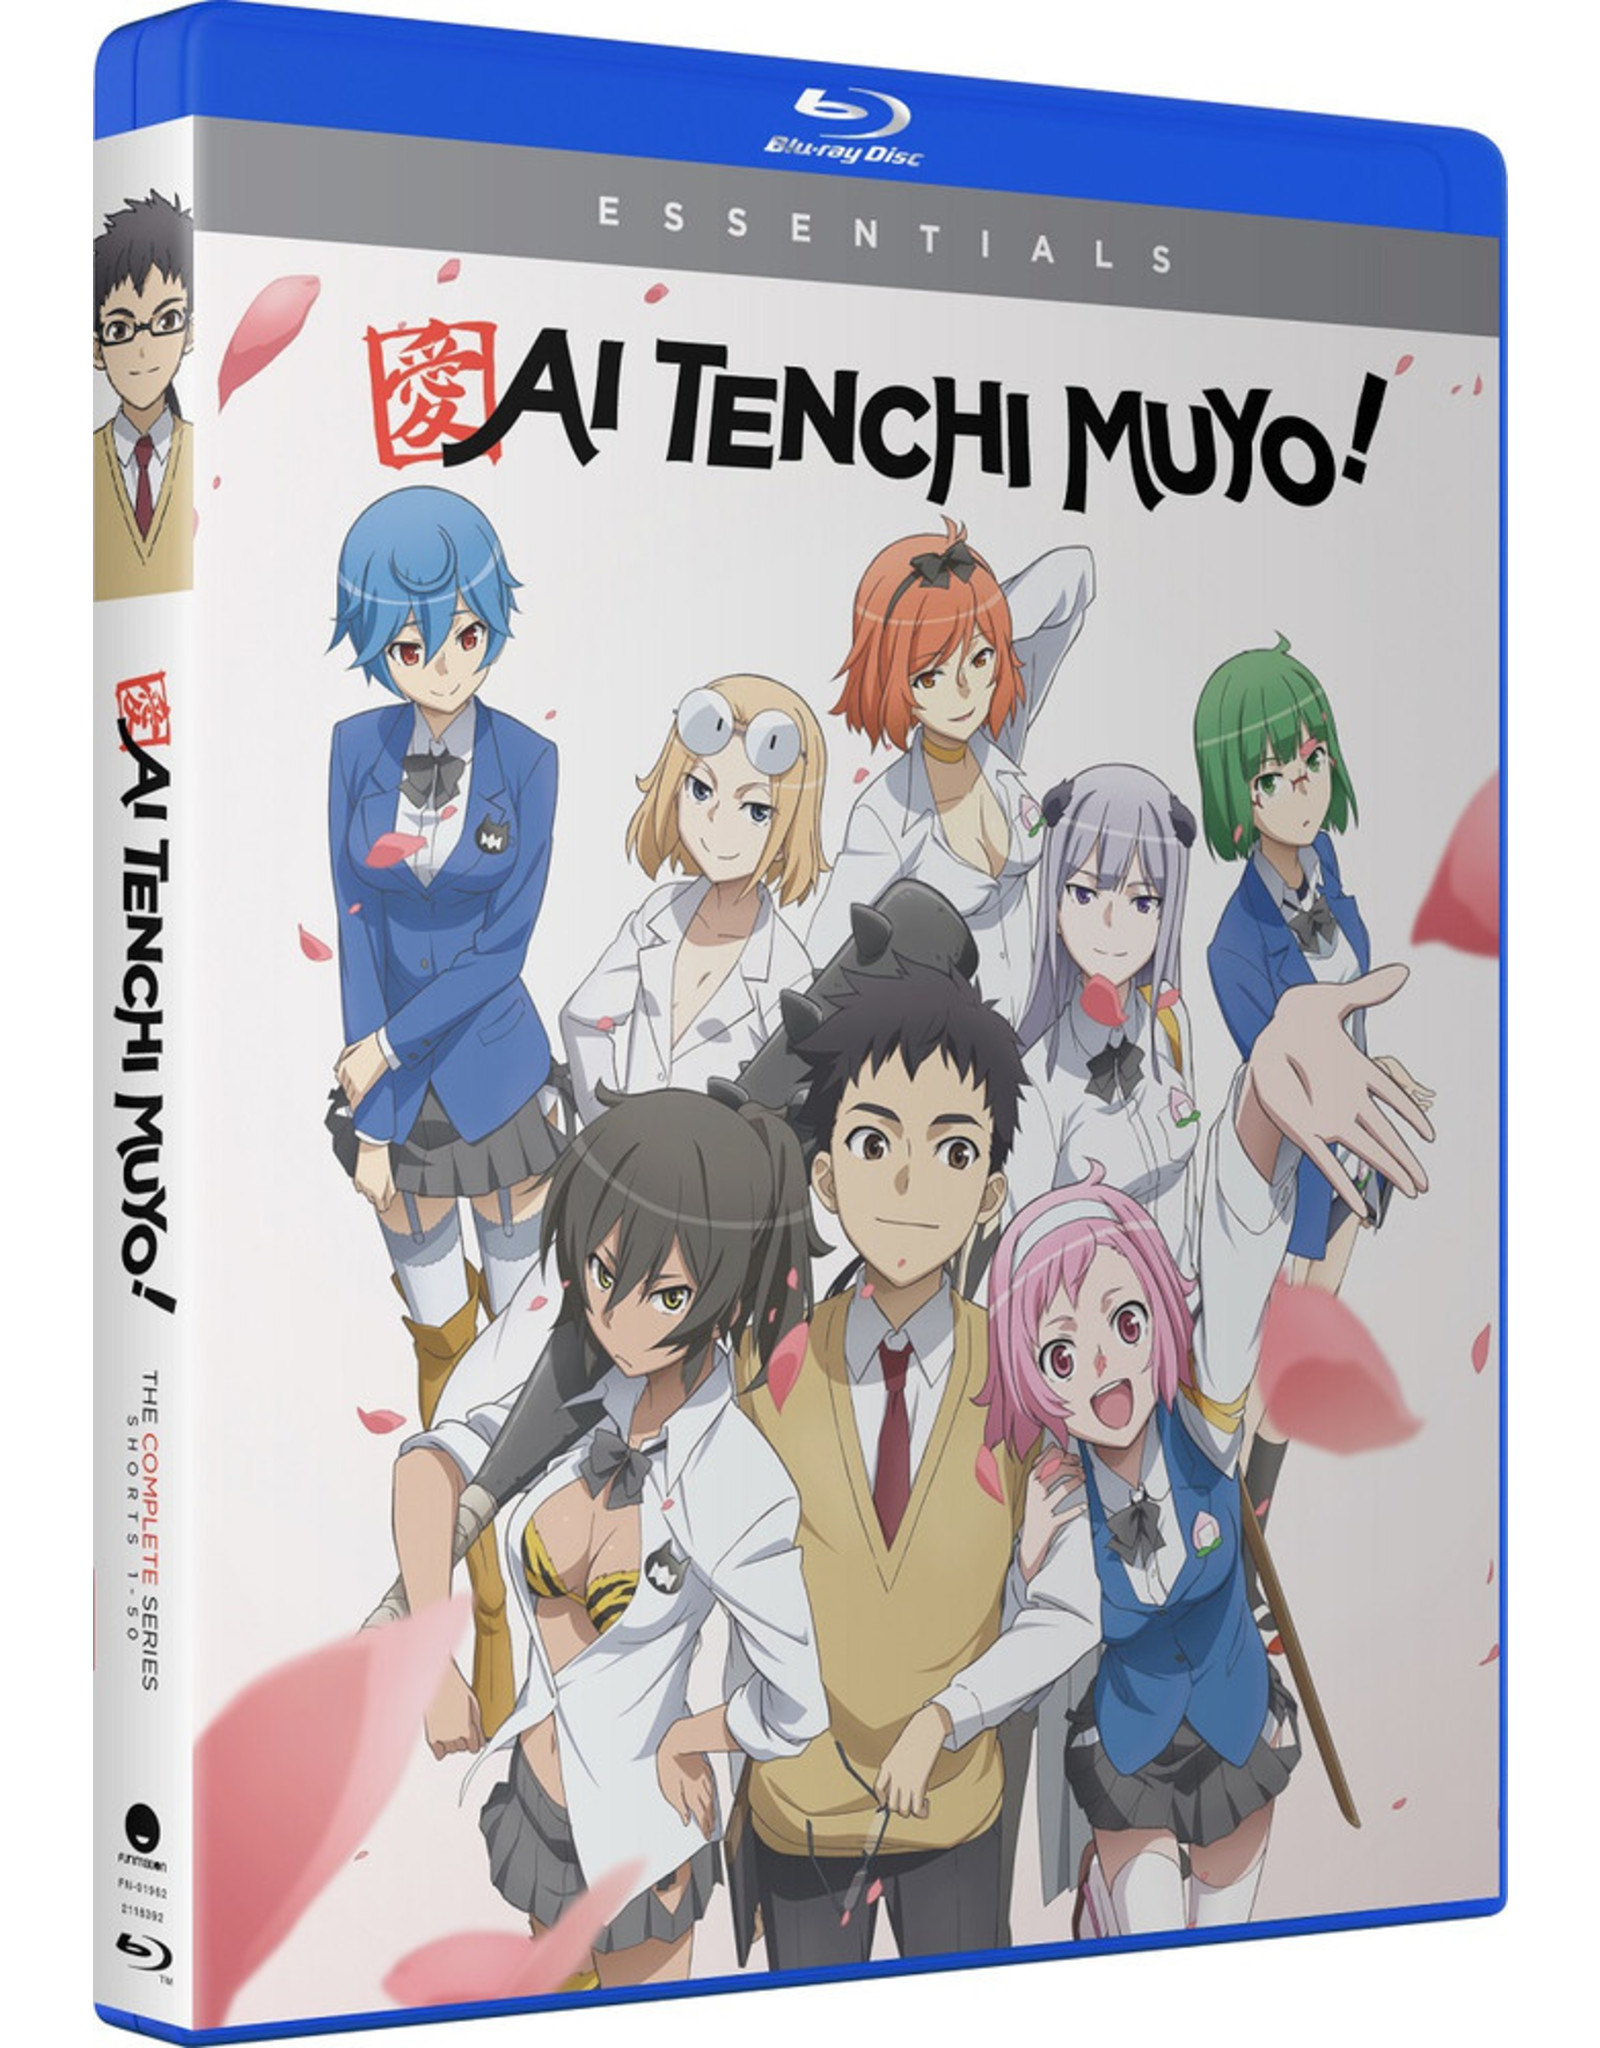 Ai Tenchi Muyo Shorts Blu-ray